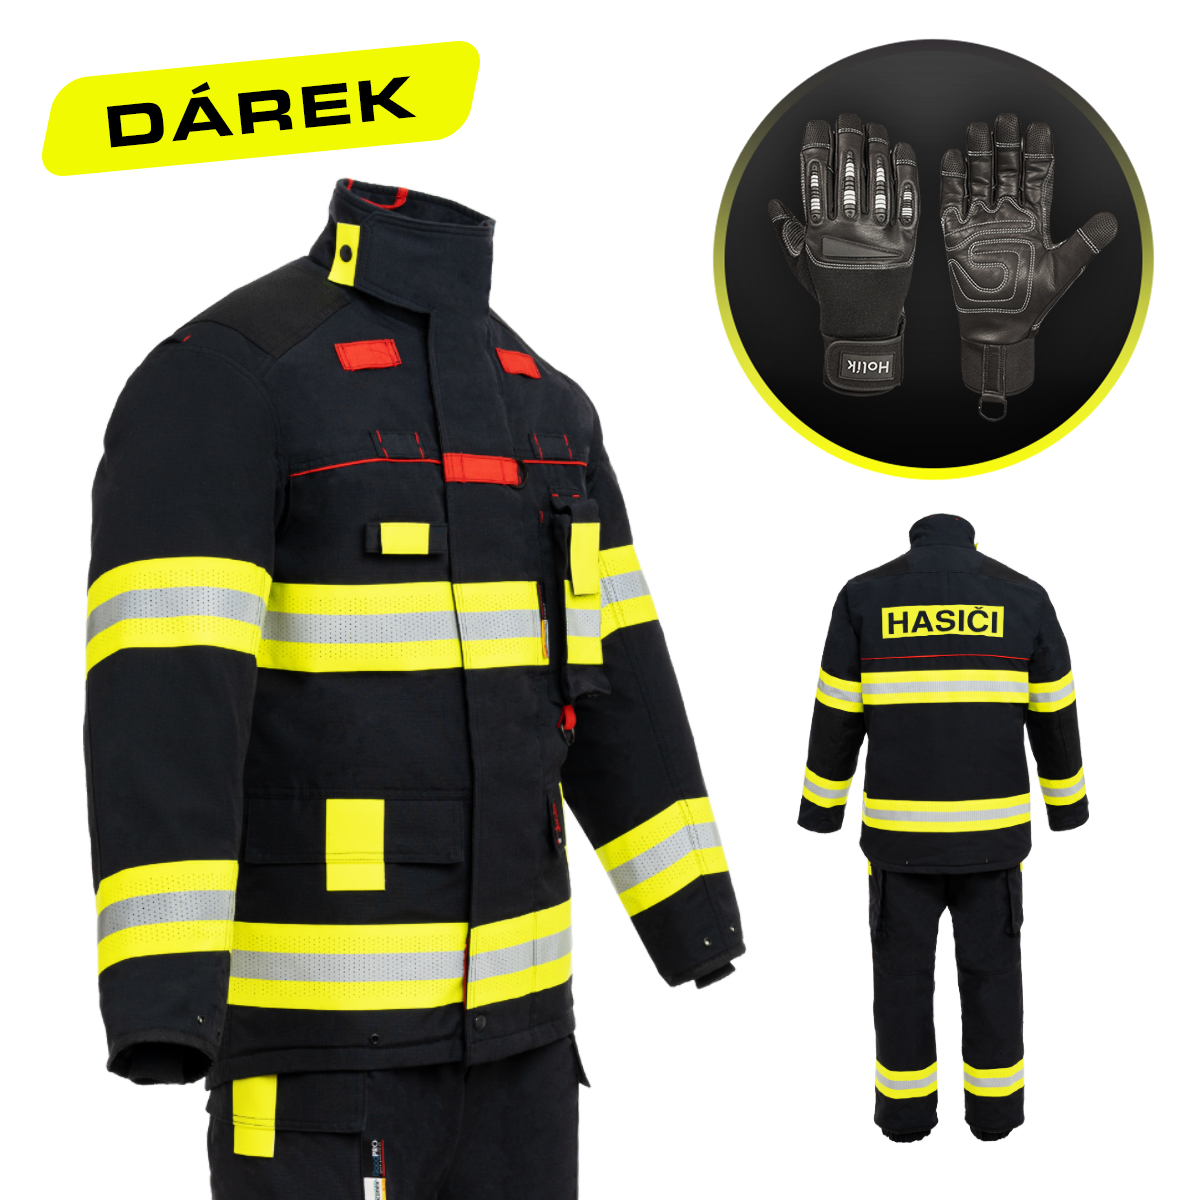 AKCE - Zásahový oděv FireRex CLASSIC + DÁREK - rukavice PENELOPE